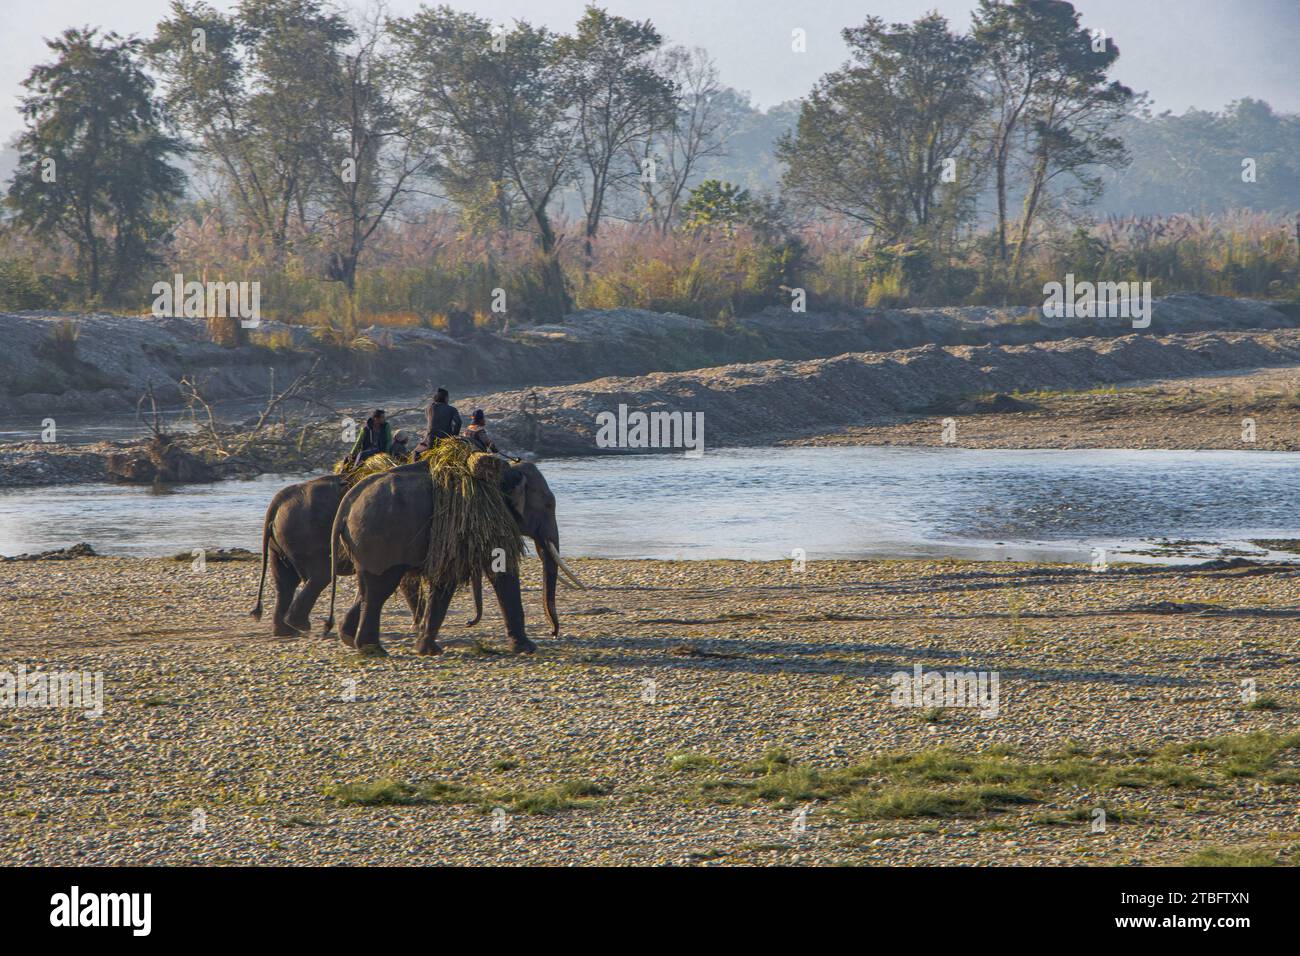 Elefante Asiatico (Elephas maximus), con mahout che porta erba per foraggio dal fiume Rapti al Parco Nazionale di Chitwan, Nepal. Foto Stock